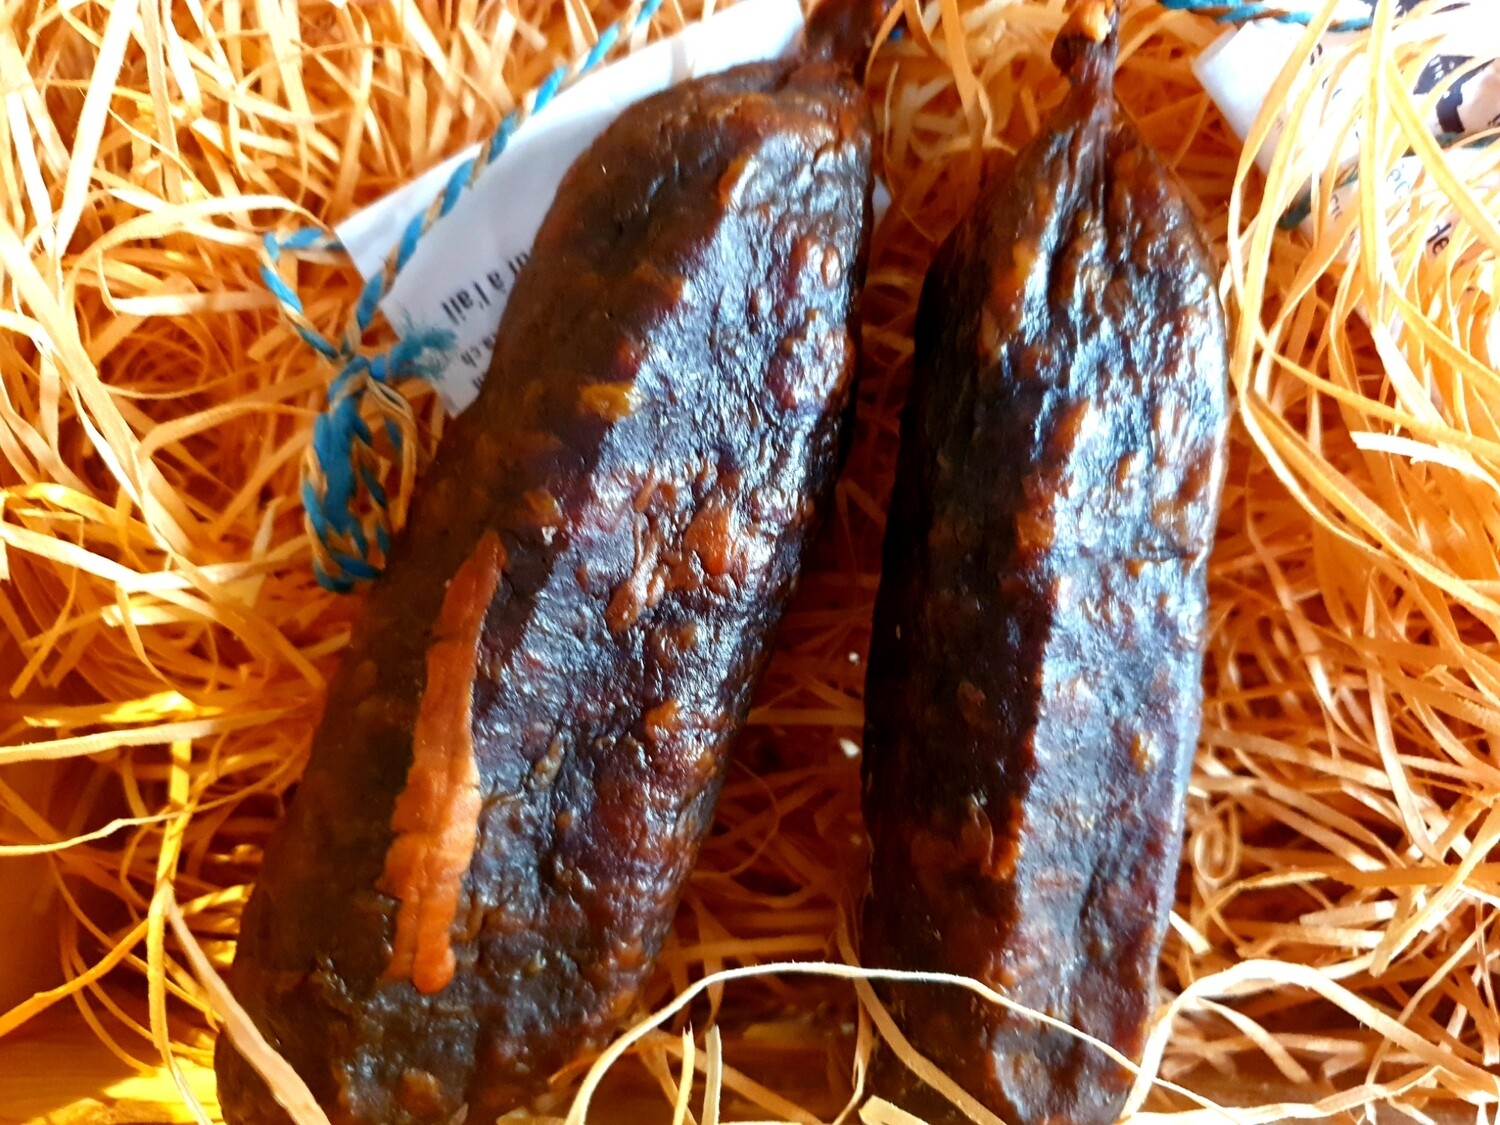 Dried beef sausage with garlic (Switzerland)